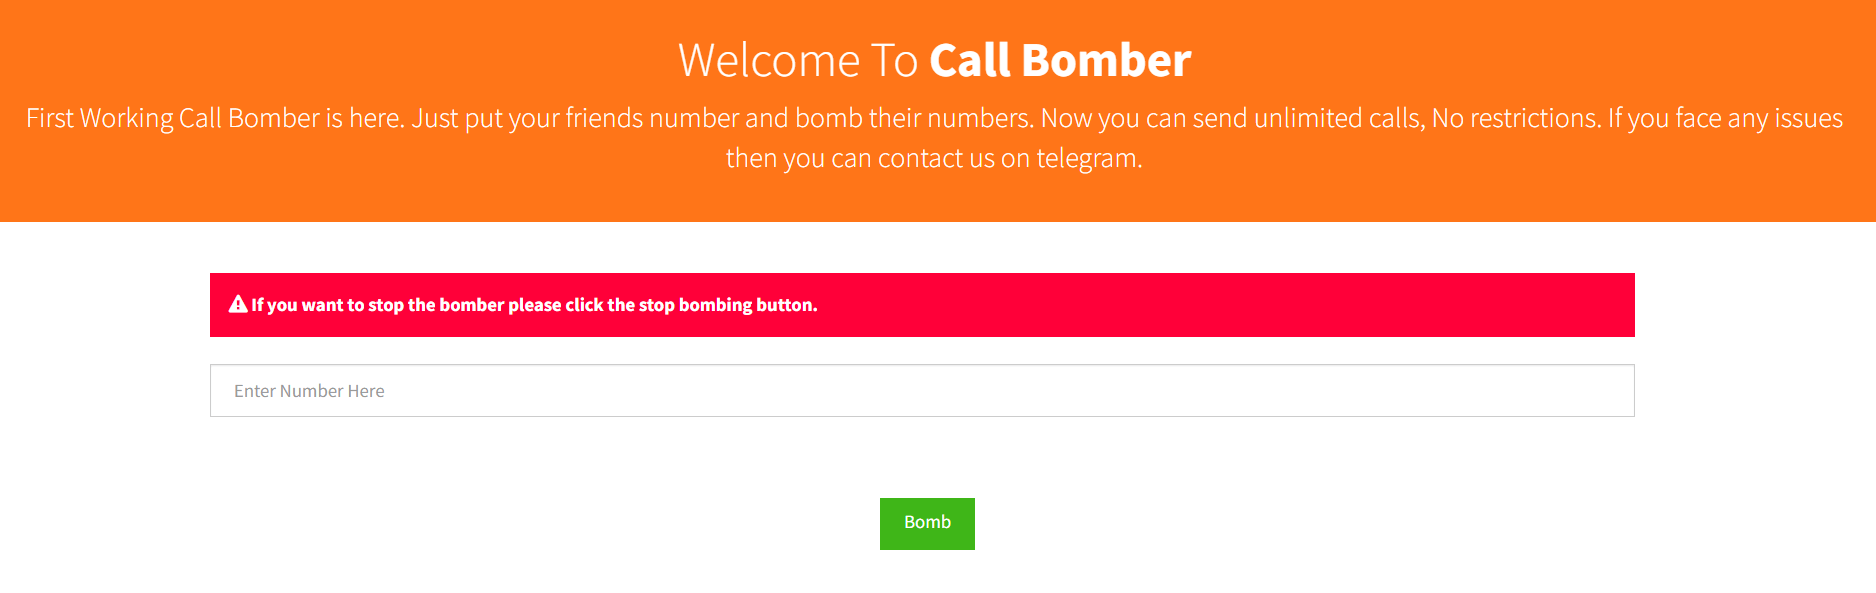 Call Bomber online